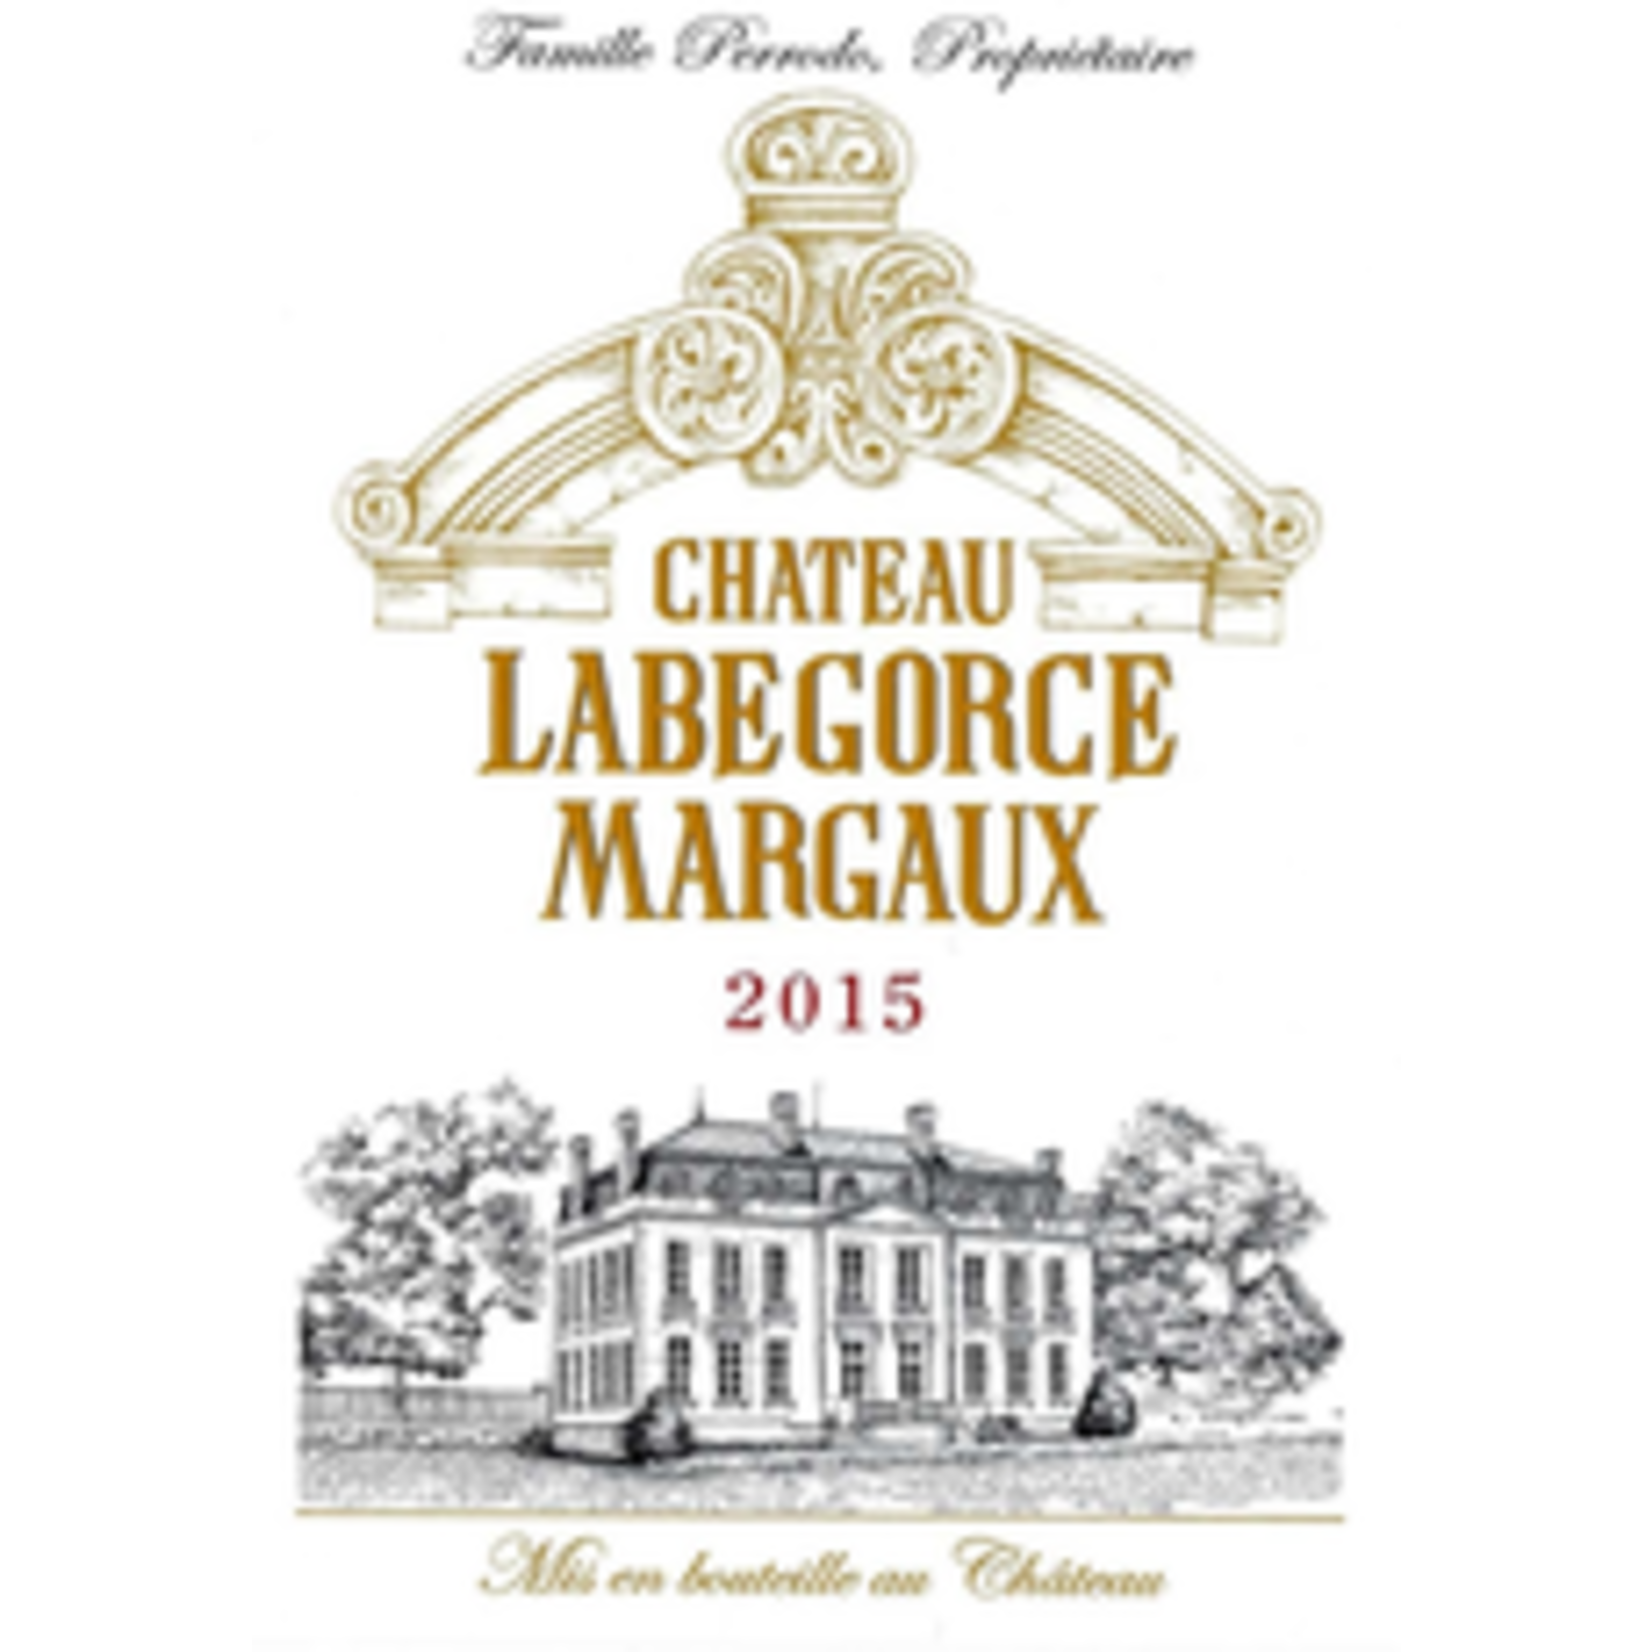 Wine Chateau Labegorce Margaux 2016